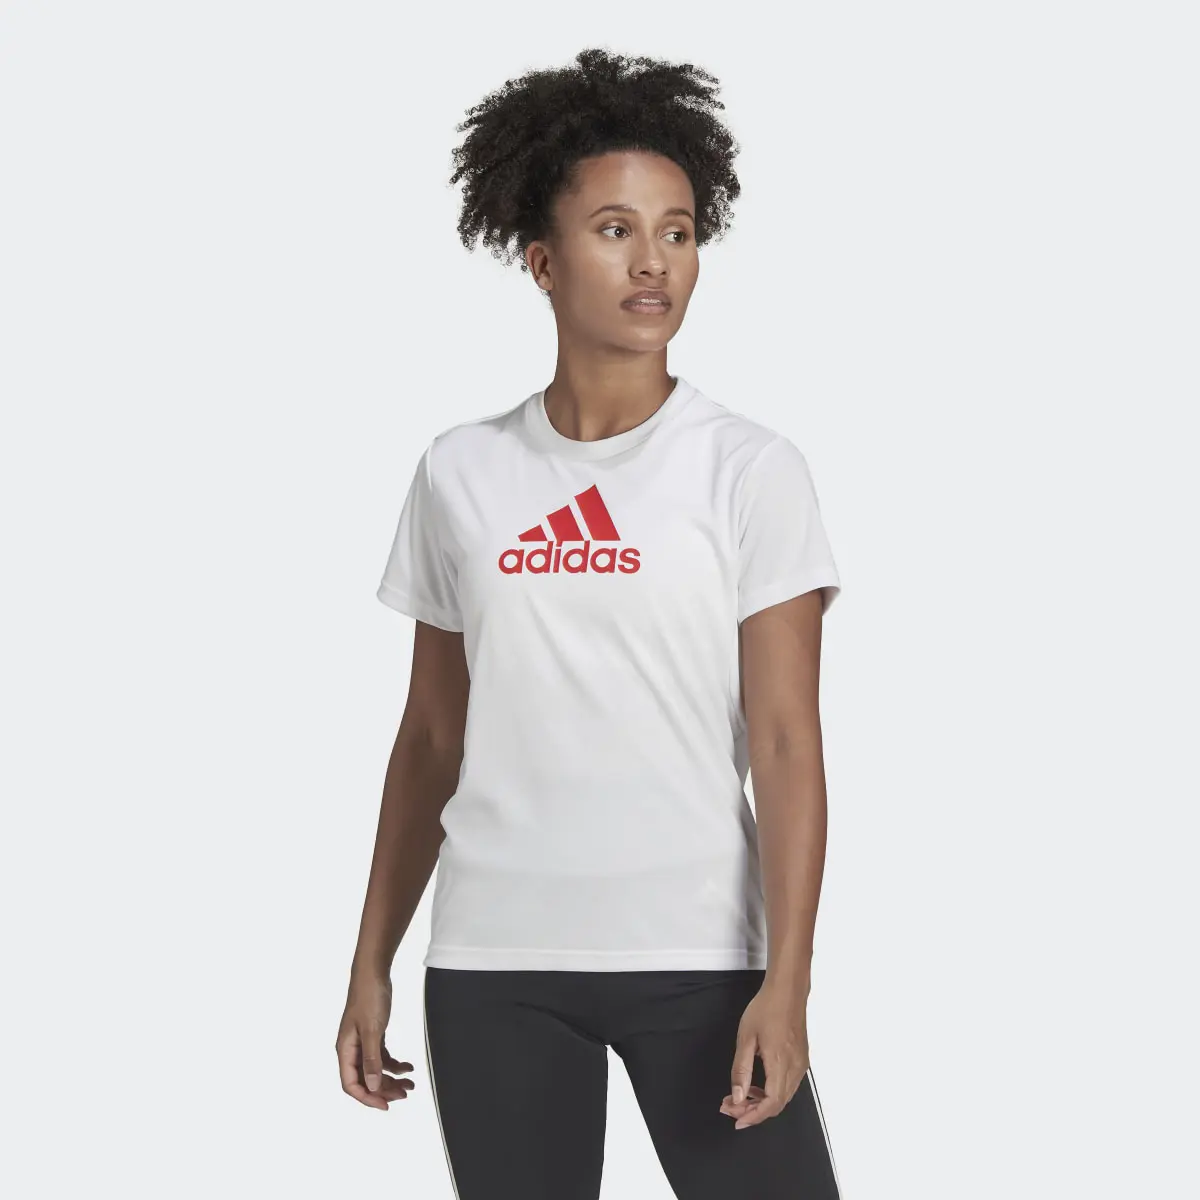 Adidas T-shirt Primeblue Sport Designed 2 Move. 2